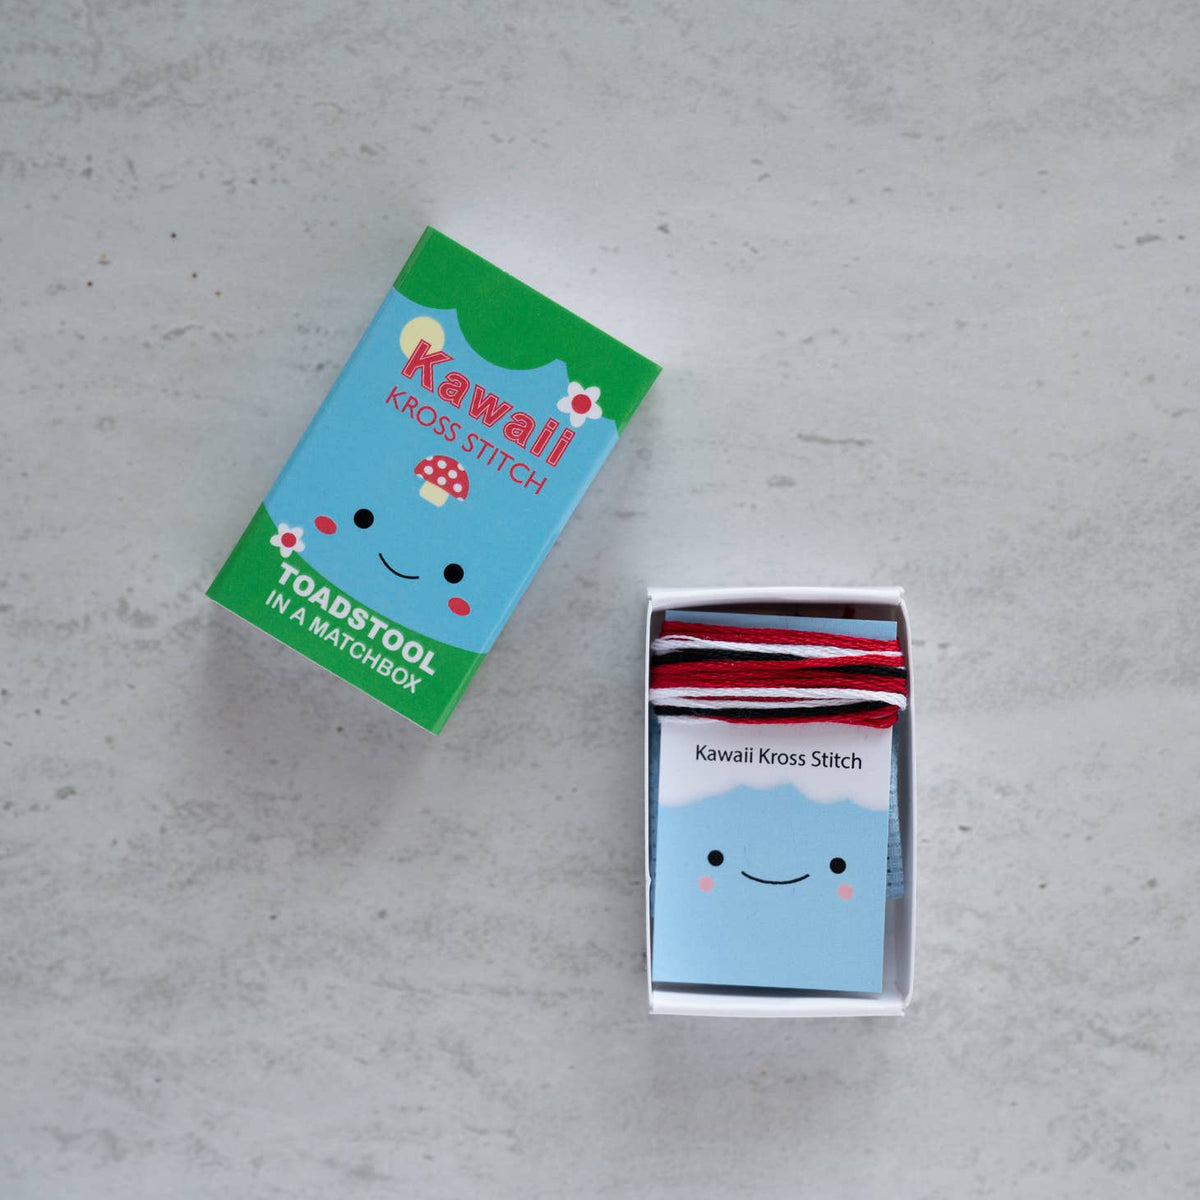 Kawaii Toadstool Mini Cross Stitch Kit in a Matchbox